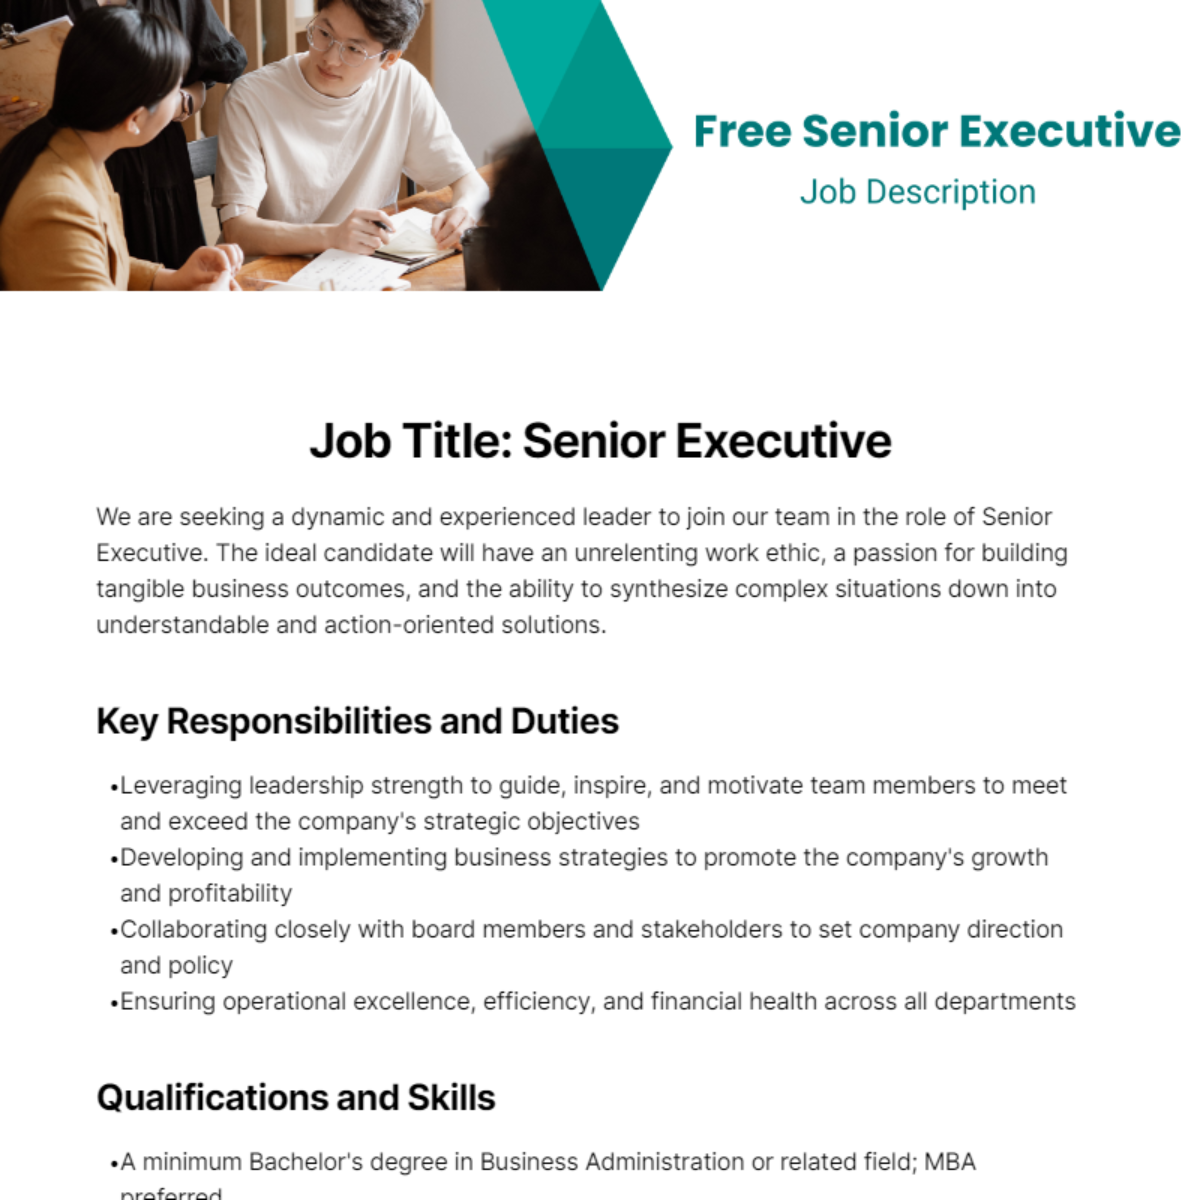 Free Senior Executive Job Description Template